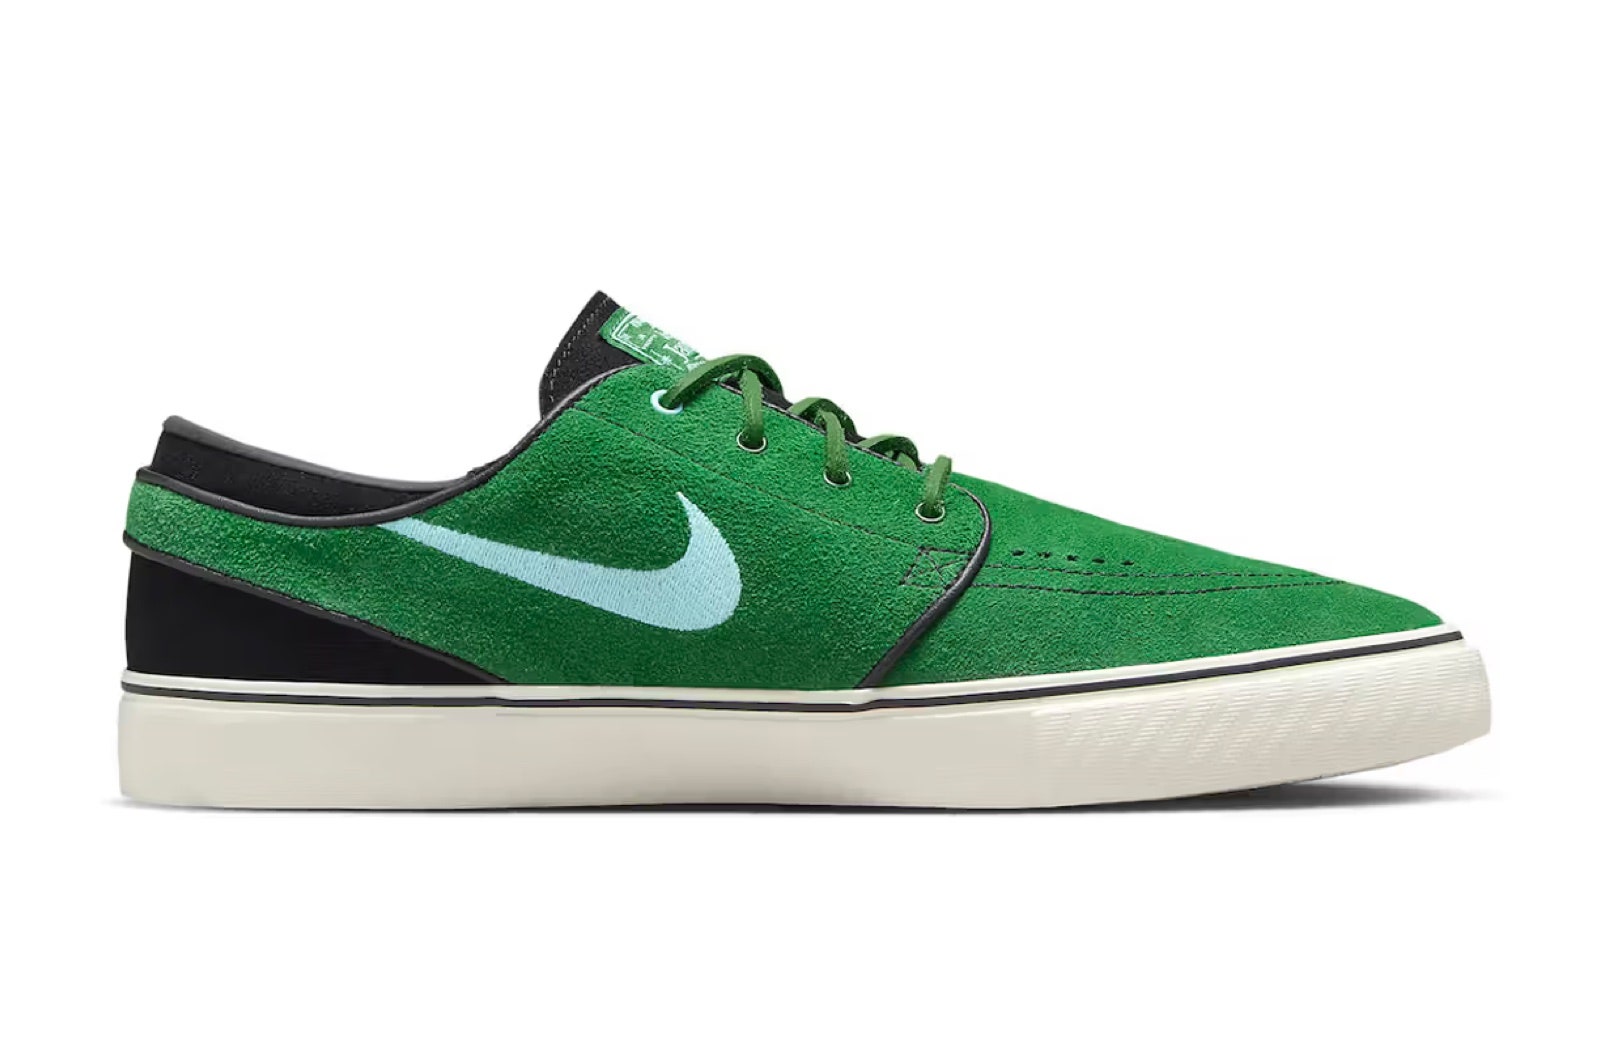 Zapatillas de tenis Nike SB Janoski OG 'George Green' en color verde con suela negra y blanca